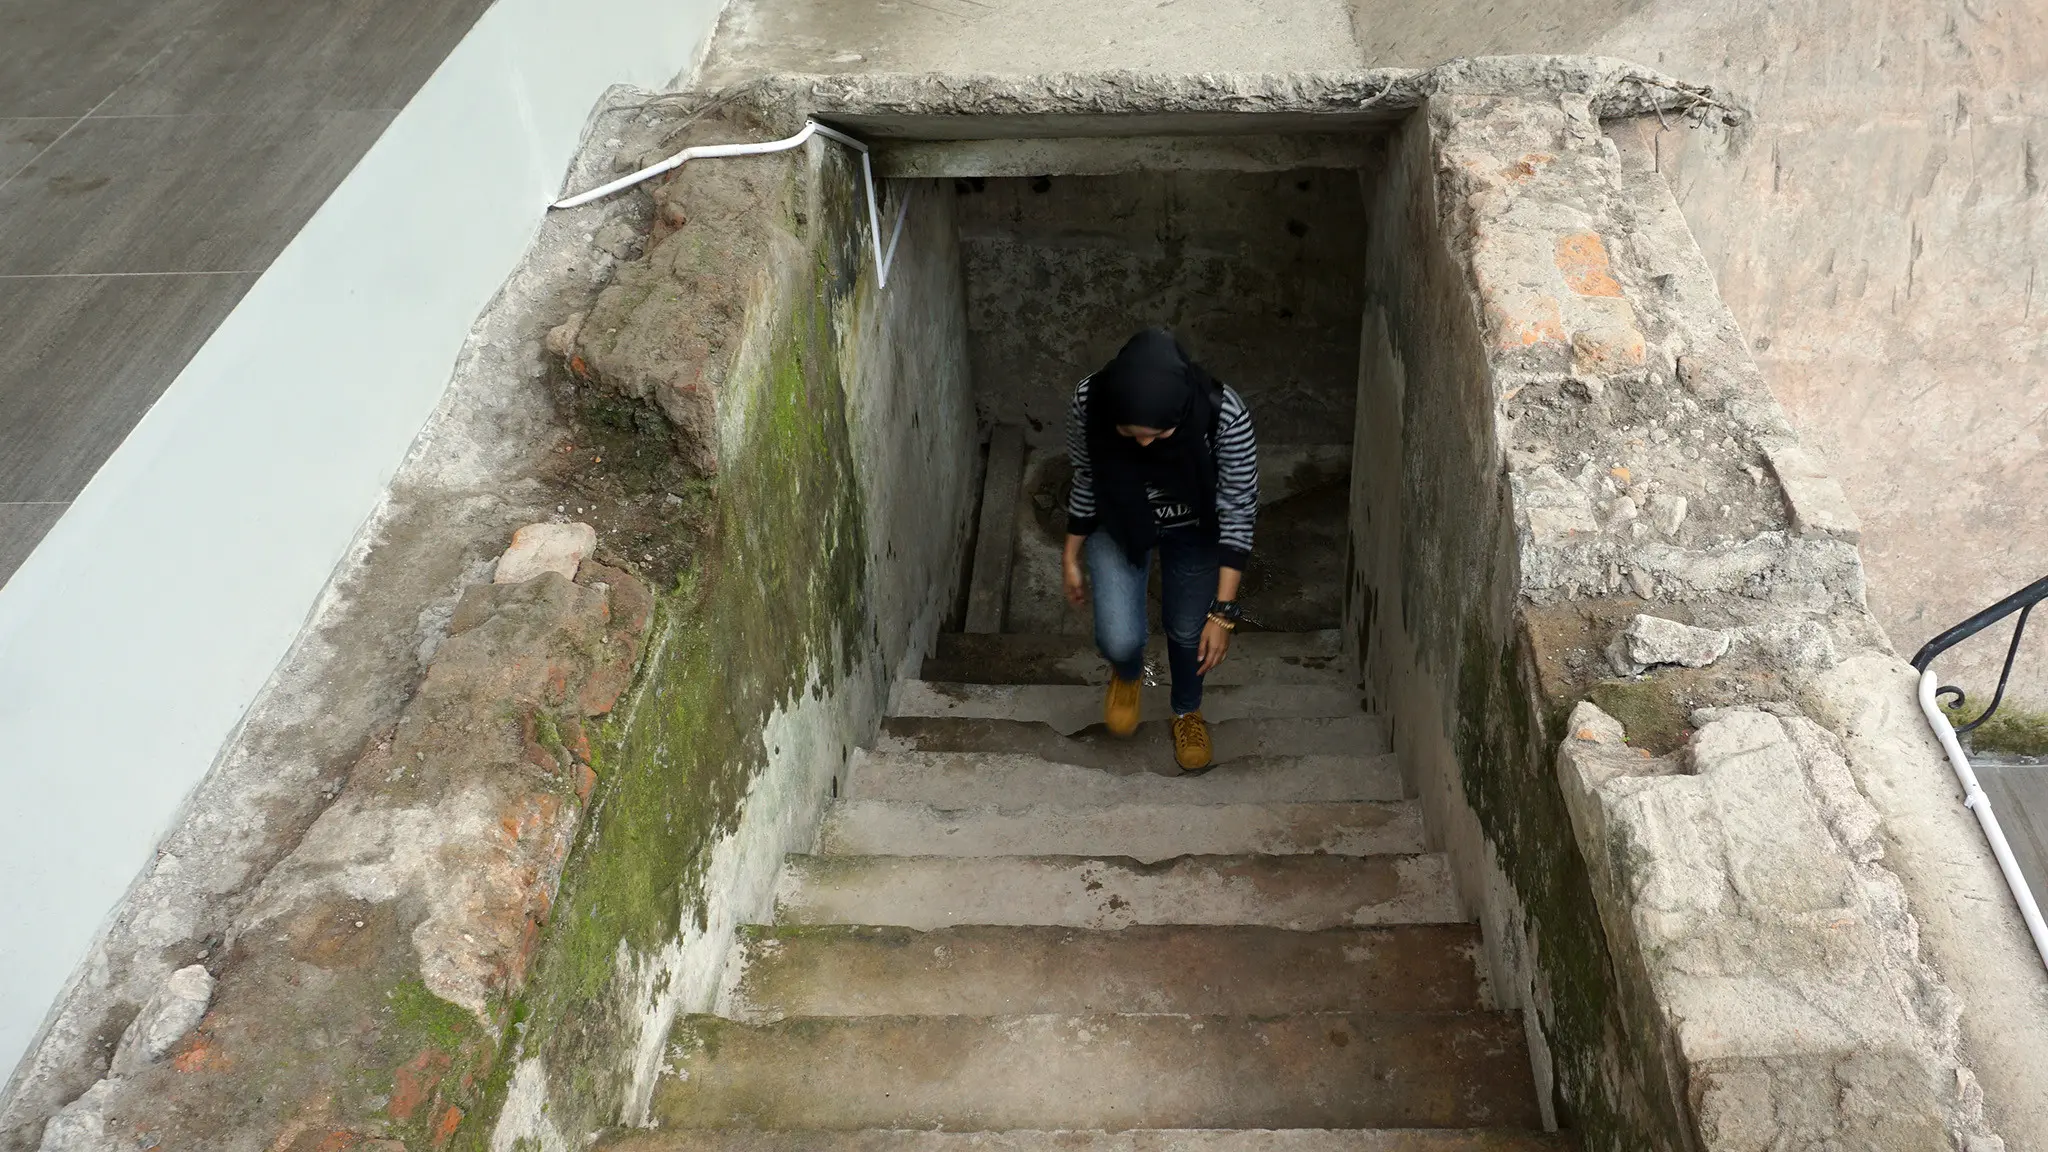 Pengunjung sedang keluar dari bungker peninggalan kolonial Belanda melalui tangga yang terdapat di setiap lorong.(Liputan6.com/Fajar Abrori)